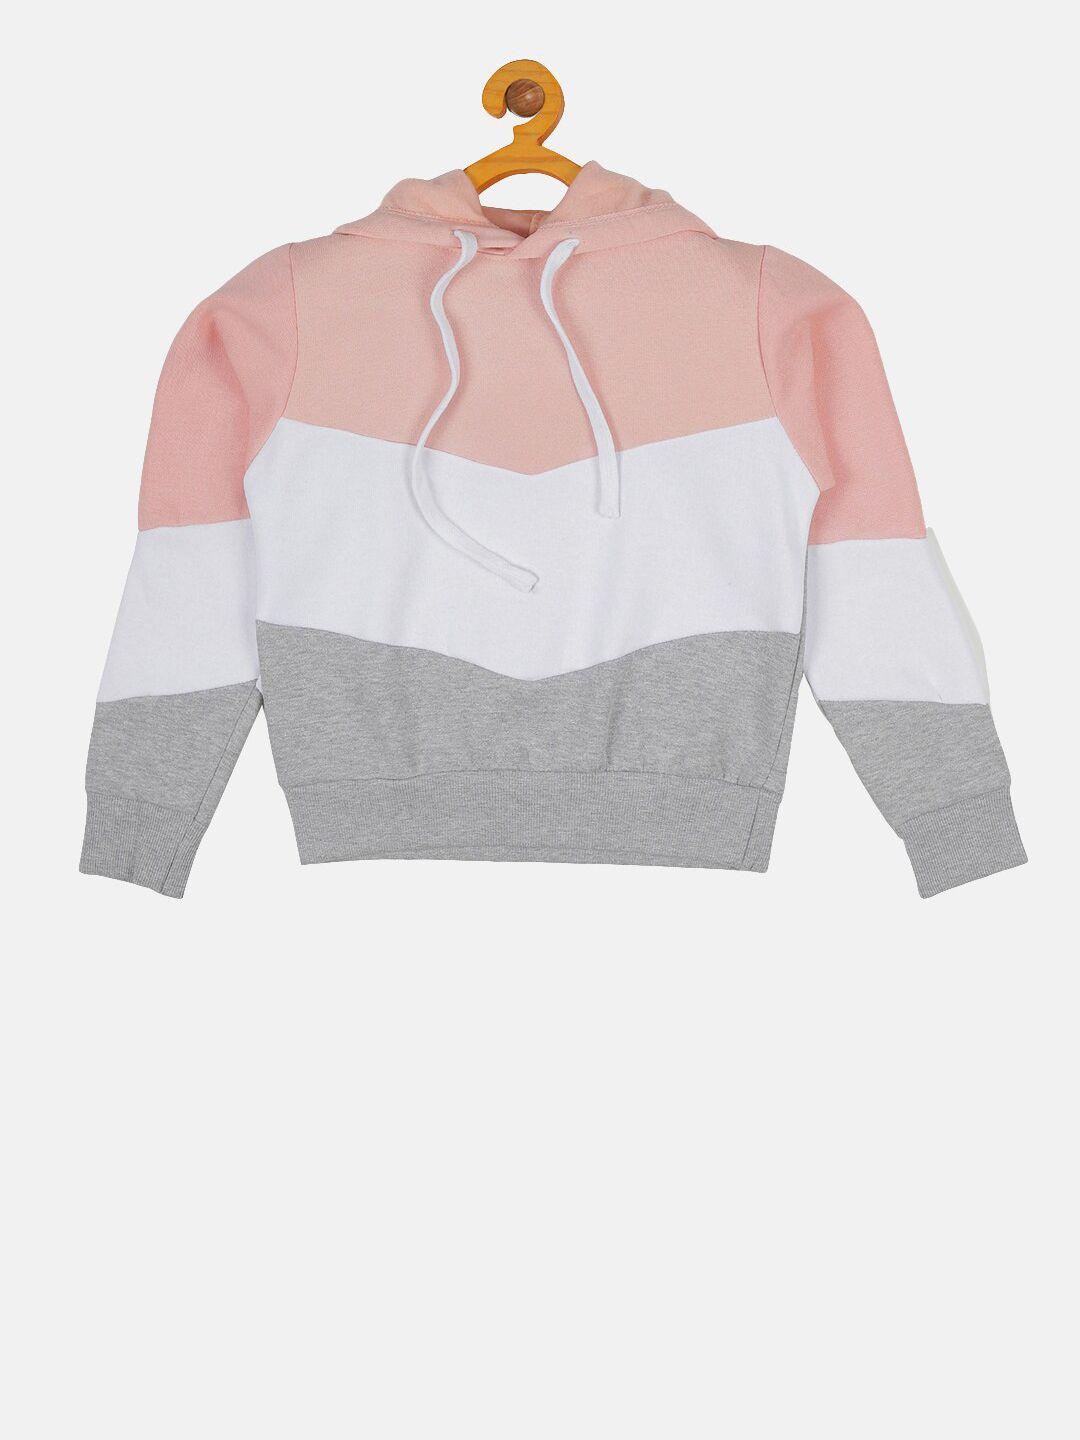 instafab boys grey & pink colourblocked hooded sweatshirt